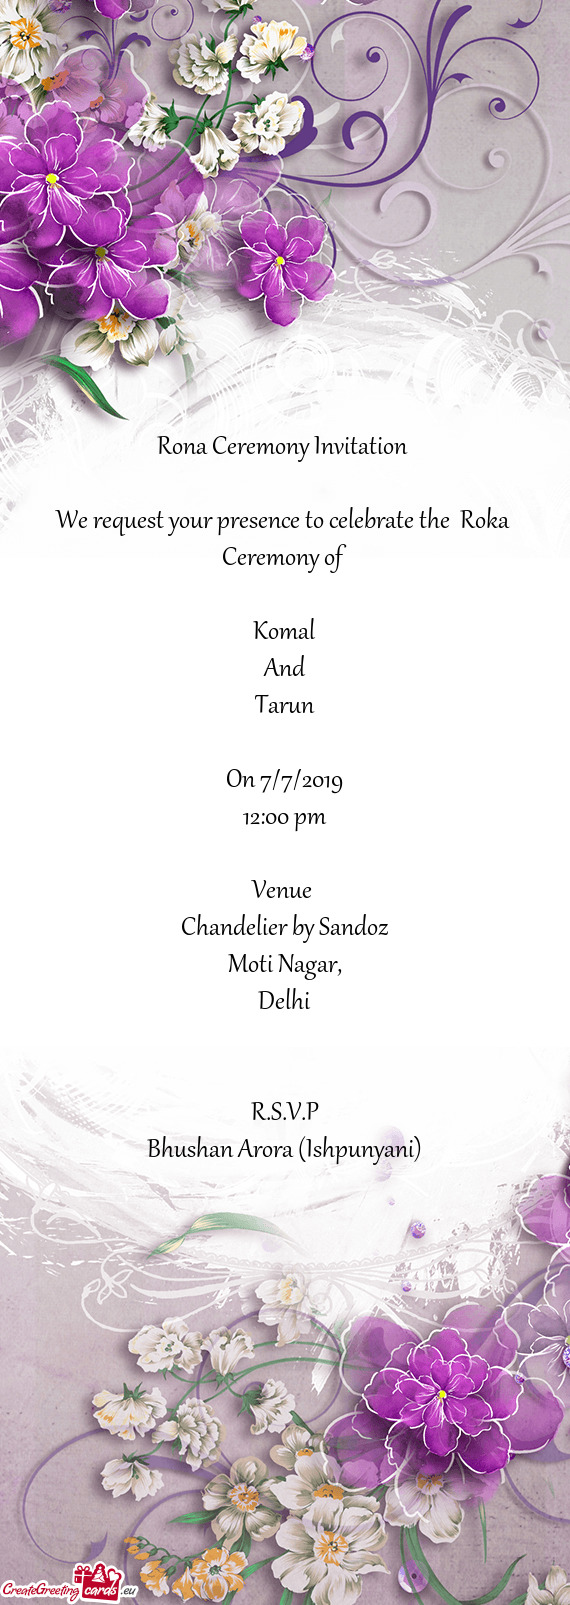 Rona Ceremony Invitation